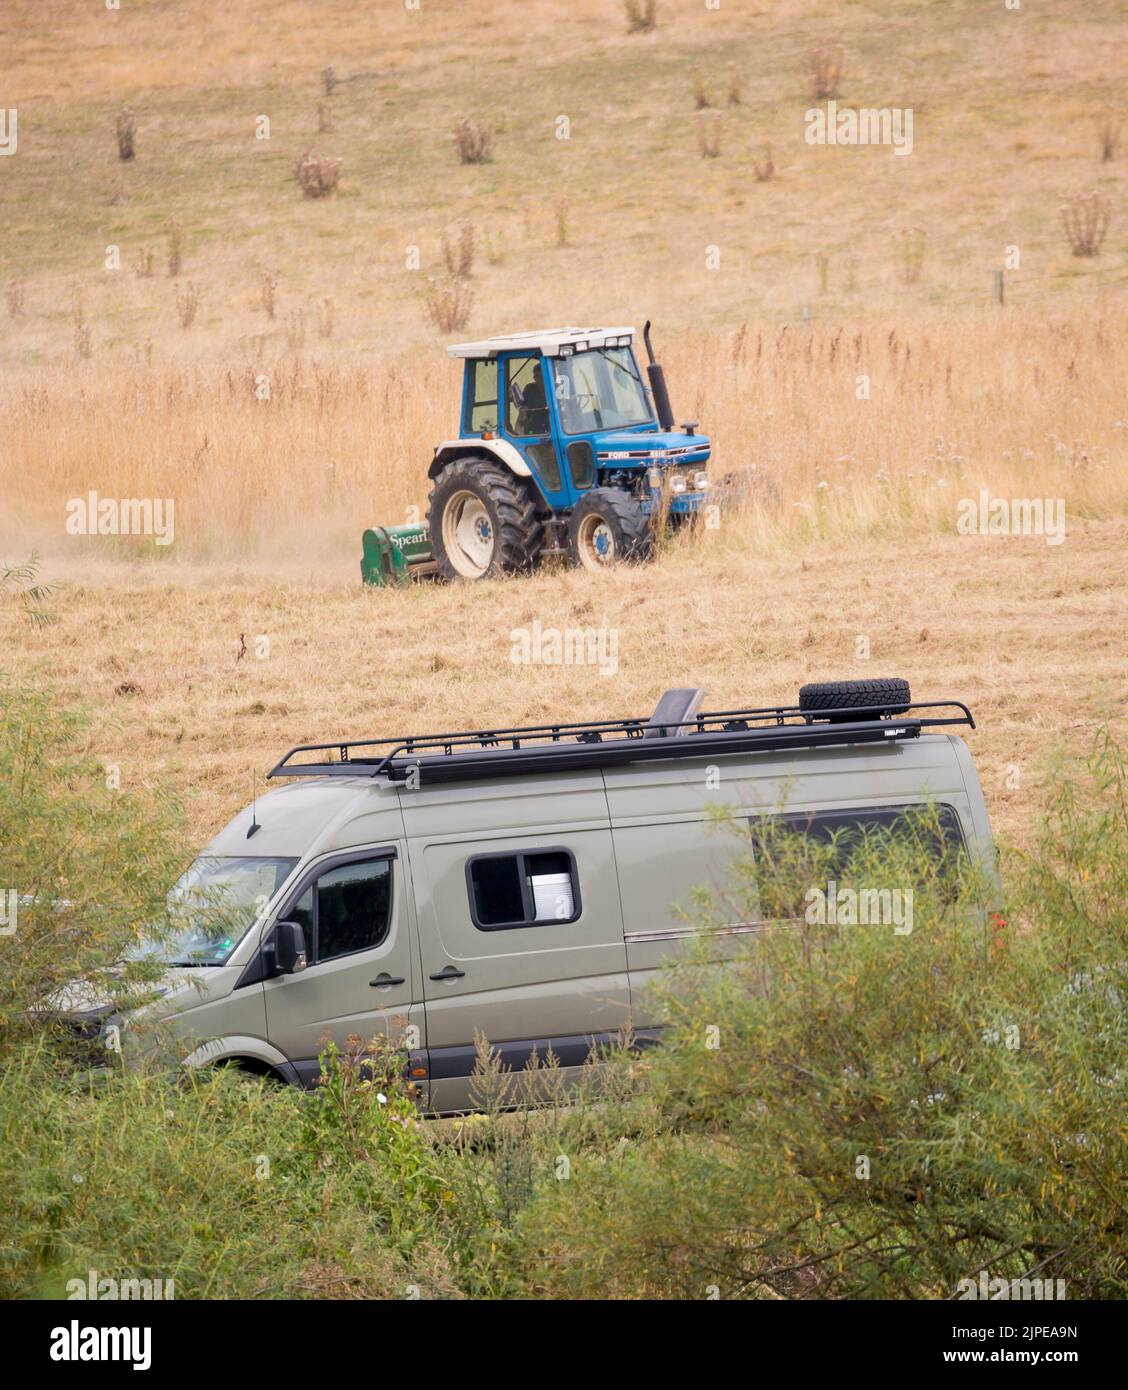 Wohnmobil parkt auf dem Land Großbritanniens, während ein Landwirt in seinem Traktor auf einem nahegelegenen Feld arbeitet. Britische Urlauber genießen Sommermobil. Stockfoto